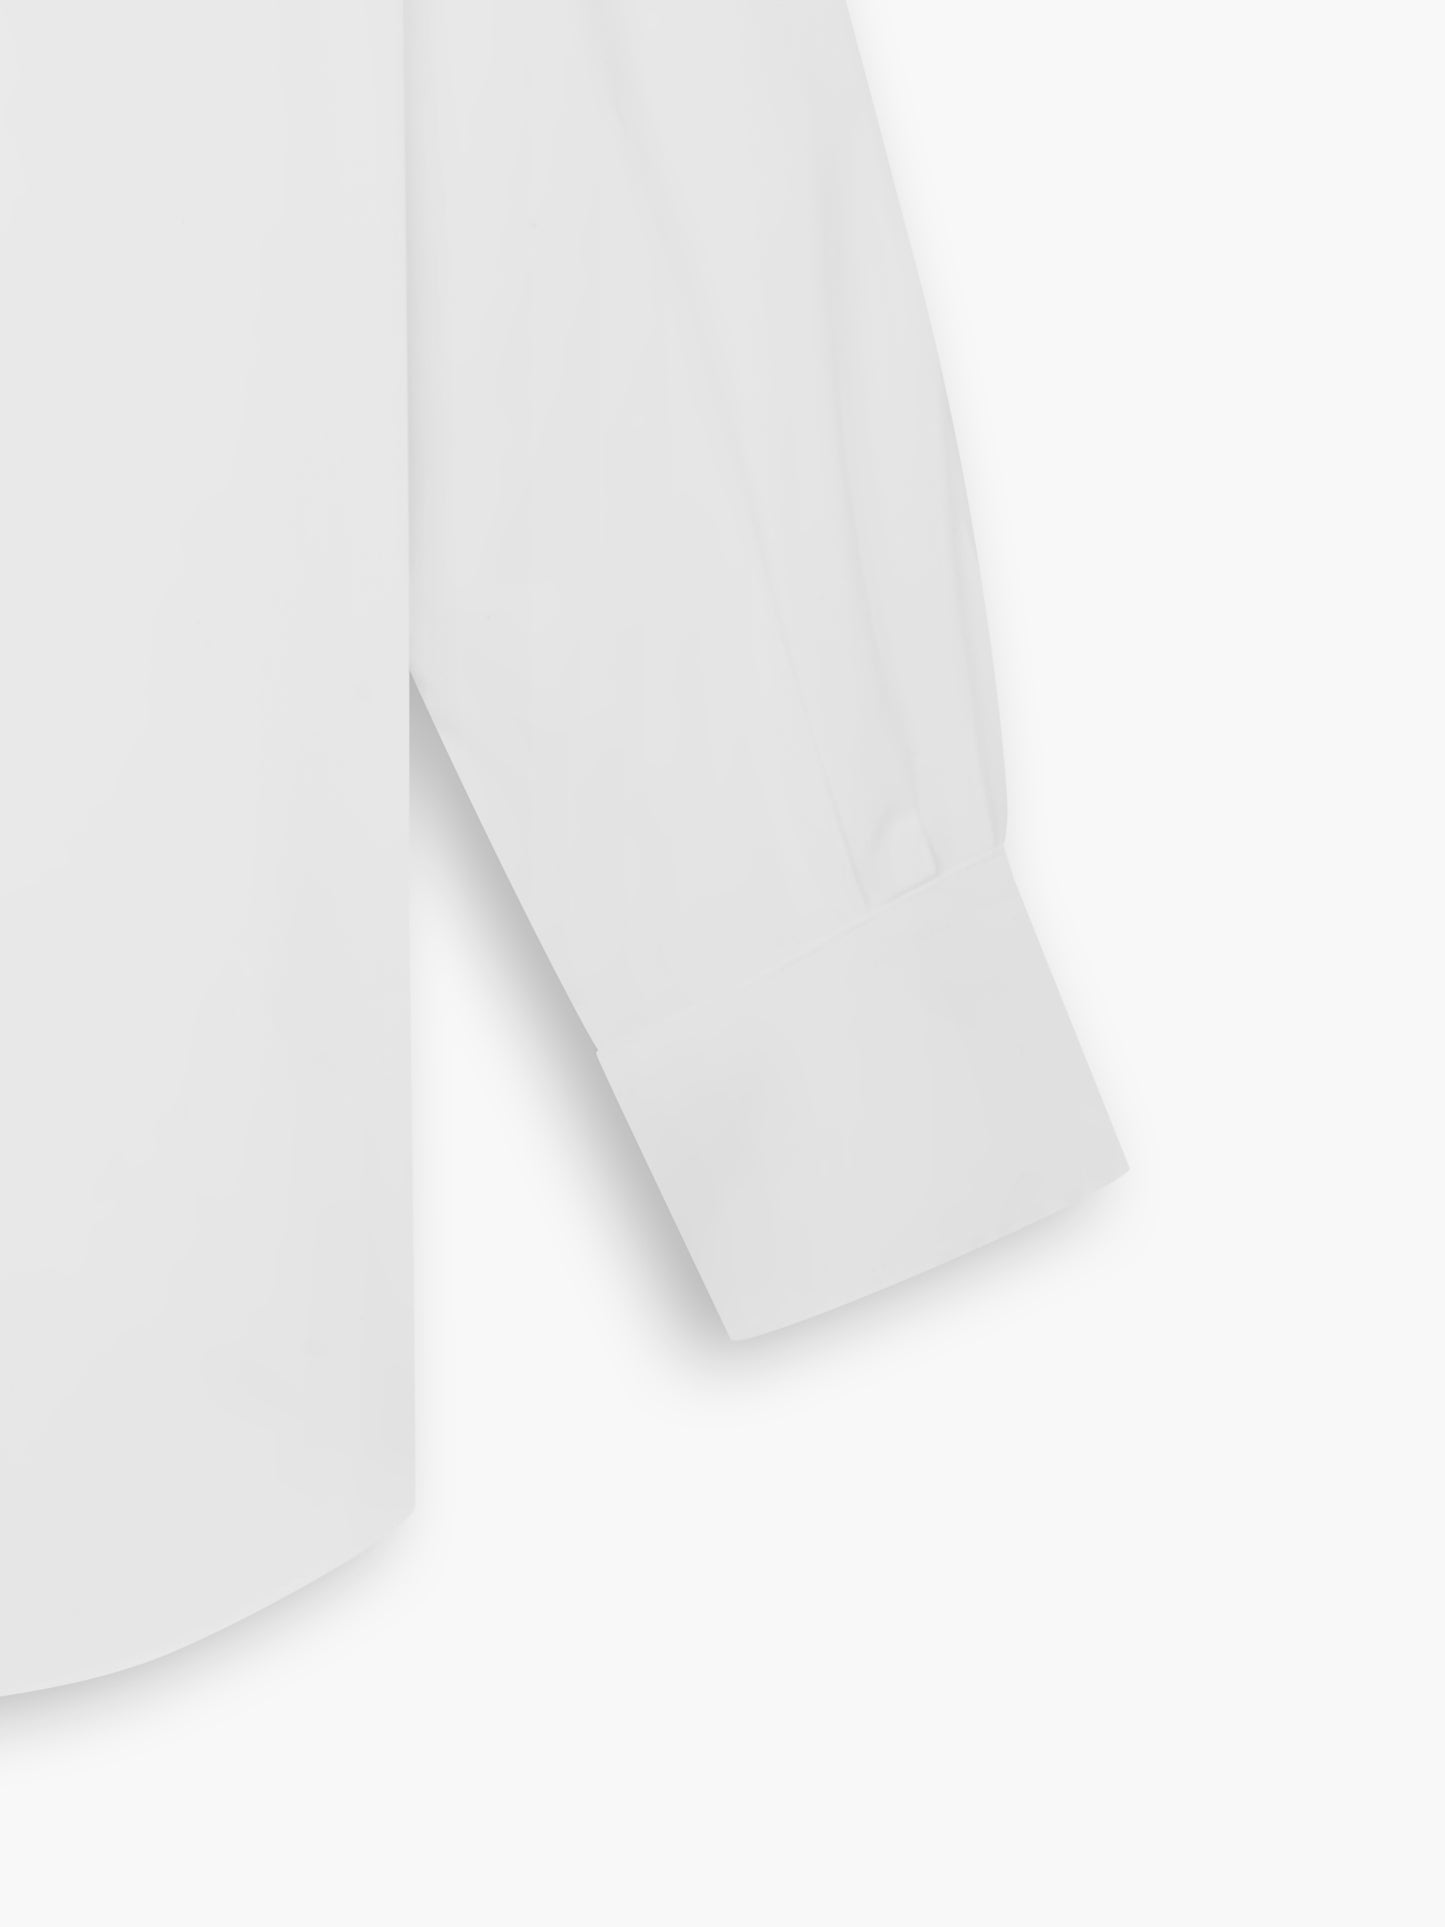 Non-Iron White Poplin Slim Fit Single Cuff Classic Collar Shirt